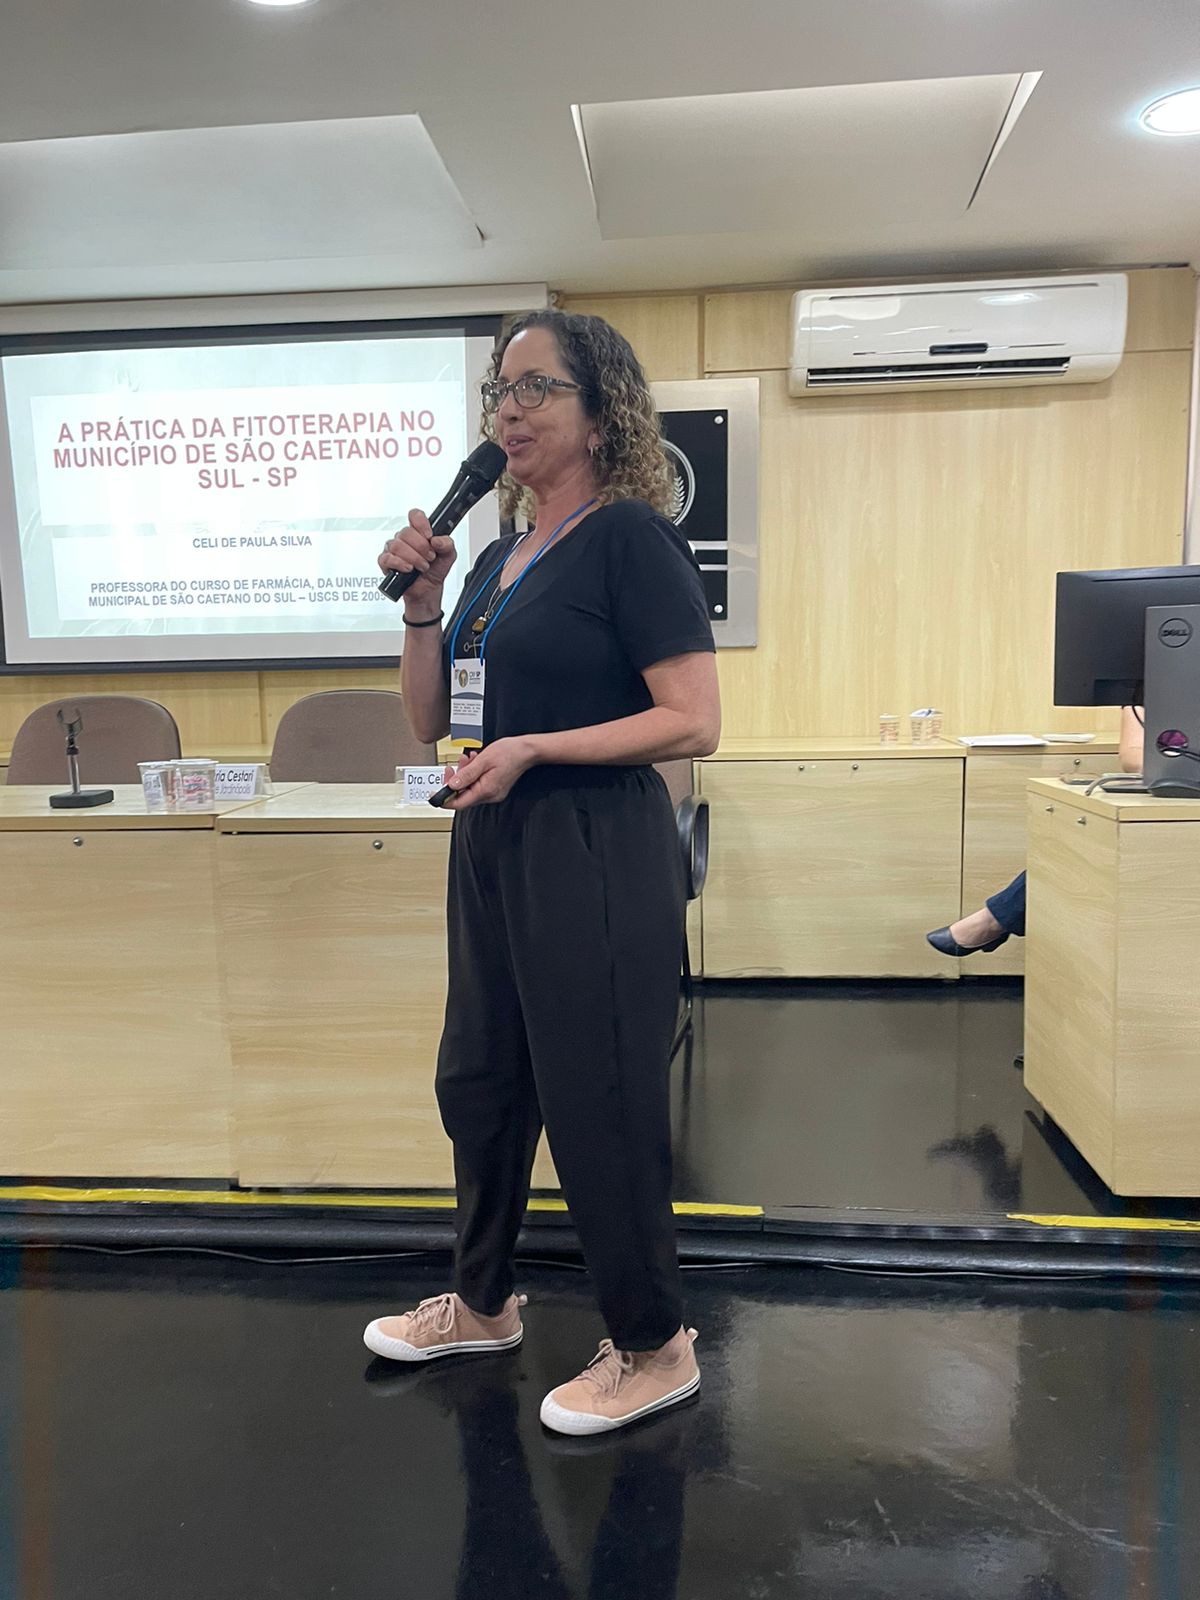  Dra. Celi de Paula da Silva falou sobre a prática da fitoterapia no município de São Caetano do Sul